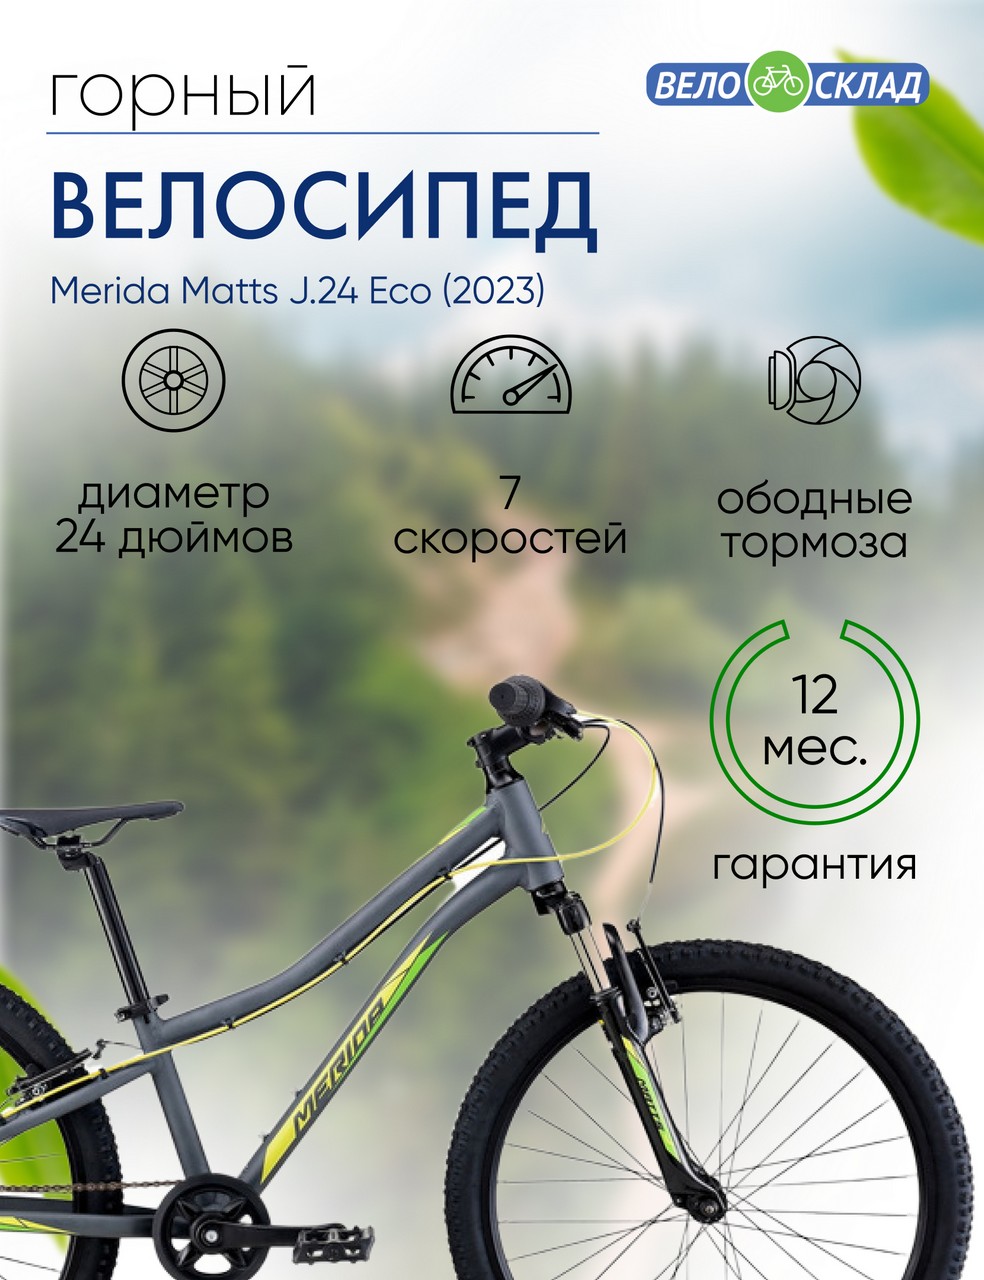 Подростковый велосипед Merida Matts J.24 Eco, год 2023, цвет Серебристый-Зеленый